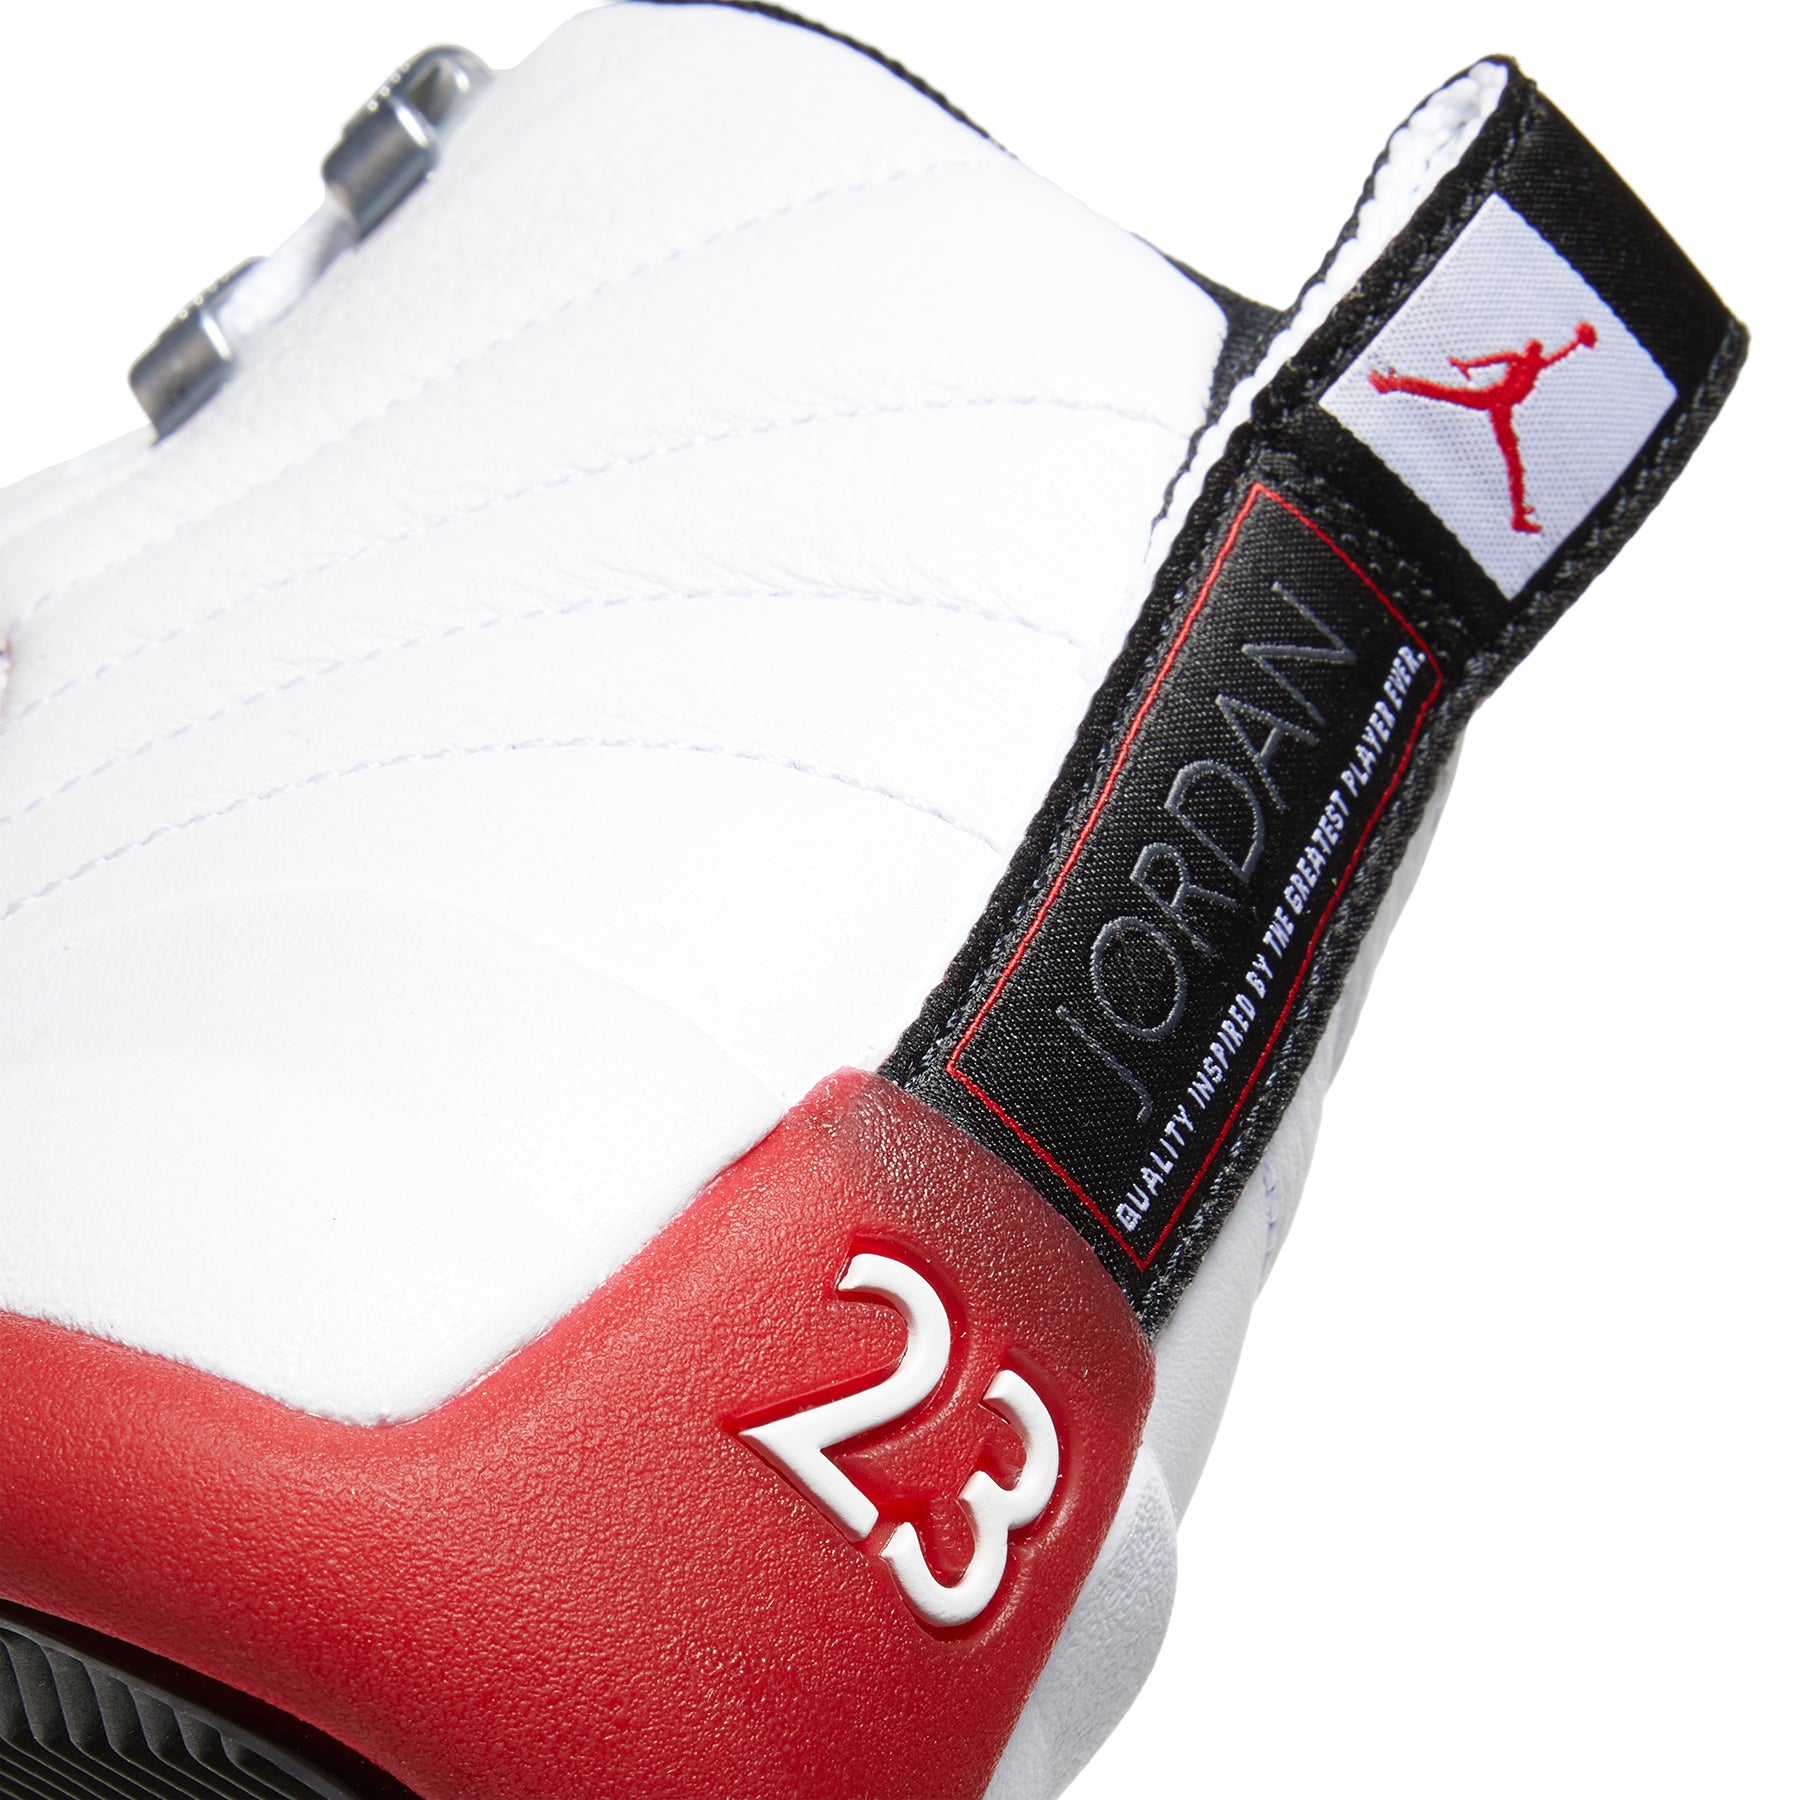 Jordan Air Jordan 12 Retro Trainers White Black Varsity Red